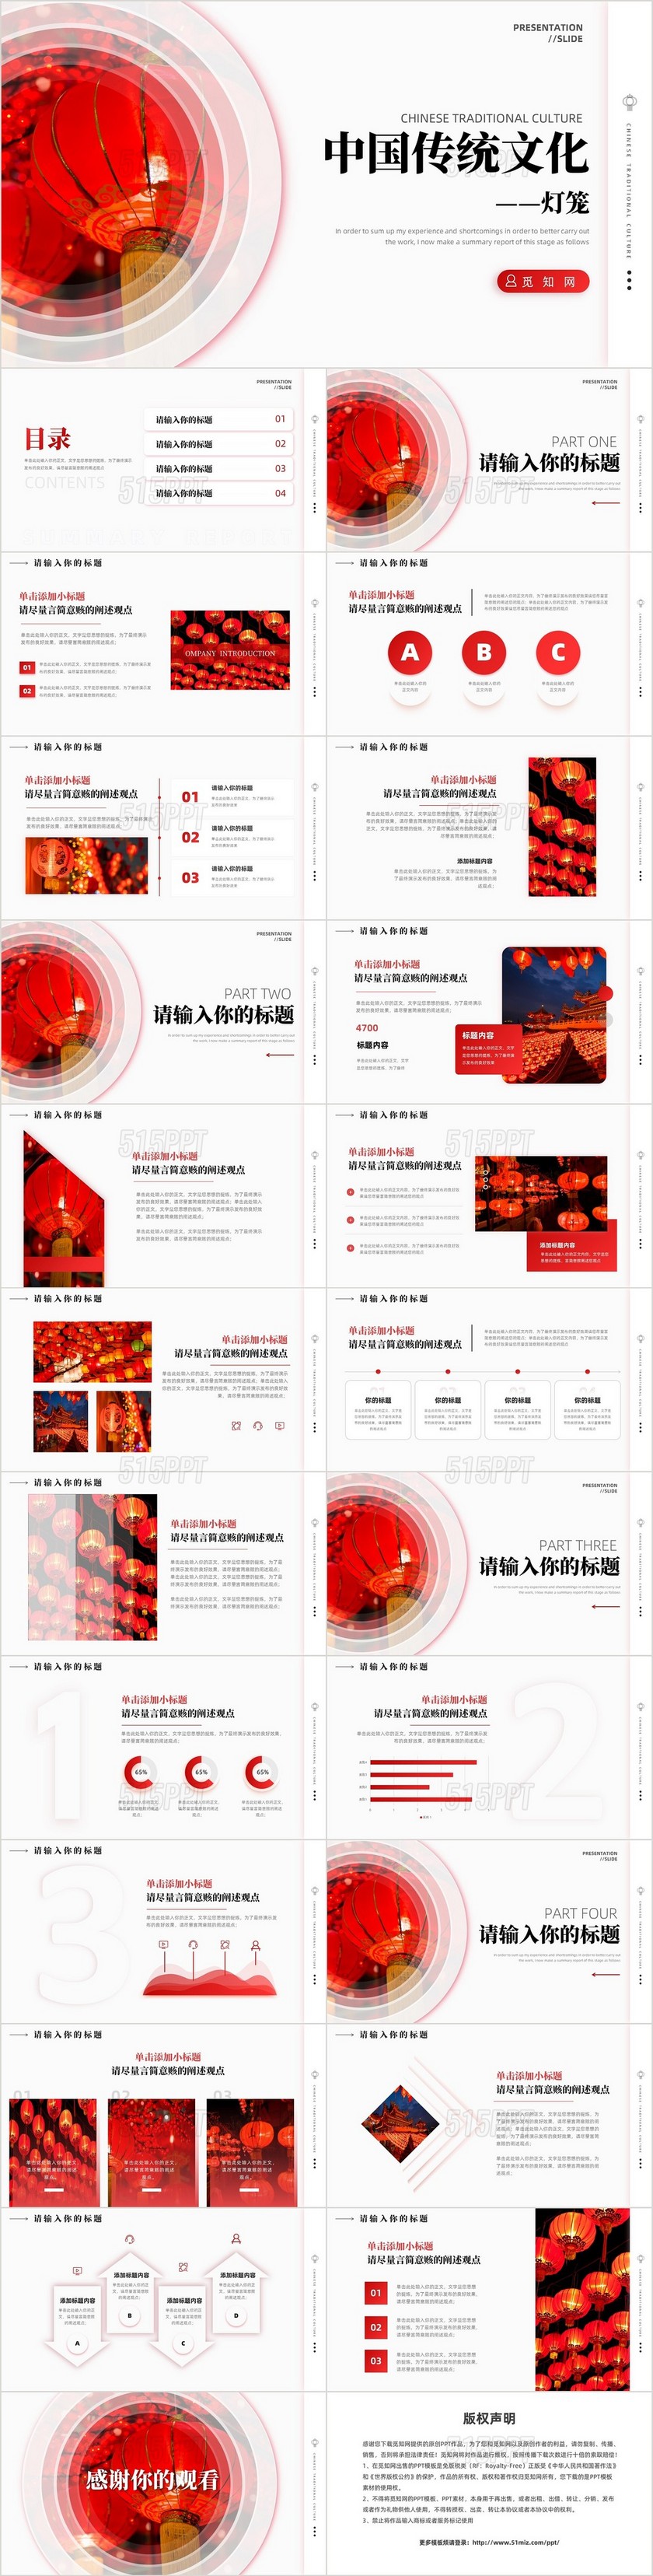 简约中国传统文化春节新年灯笼元素PPT模板